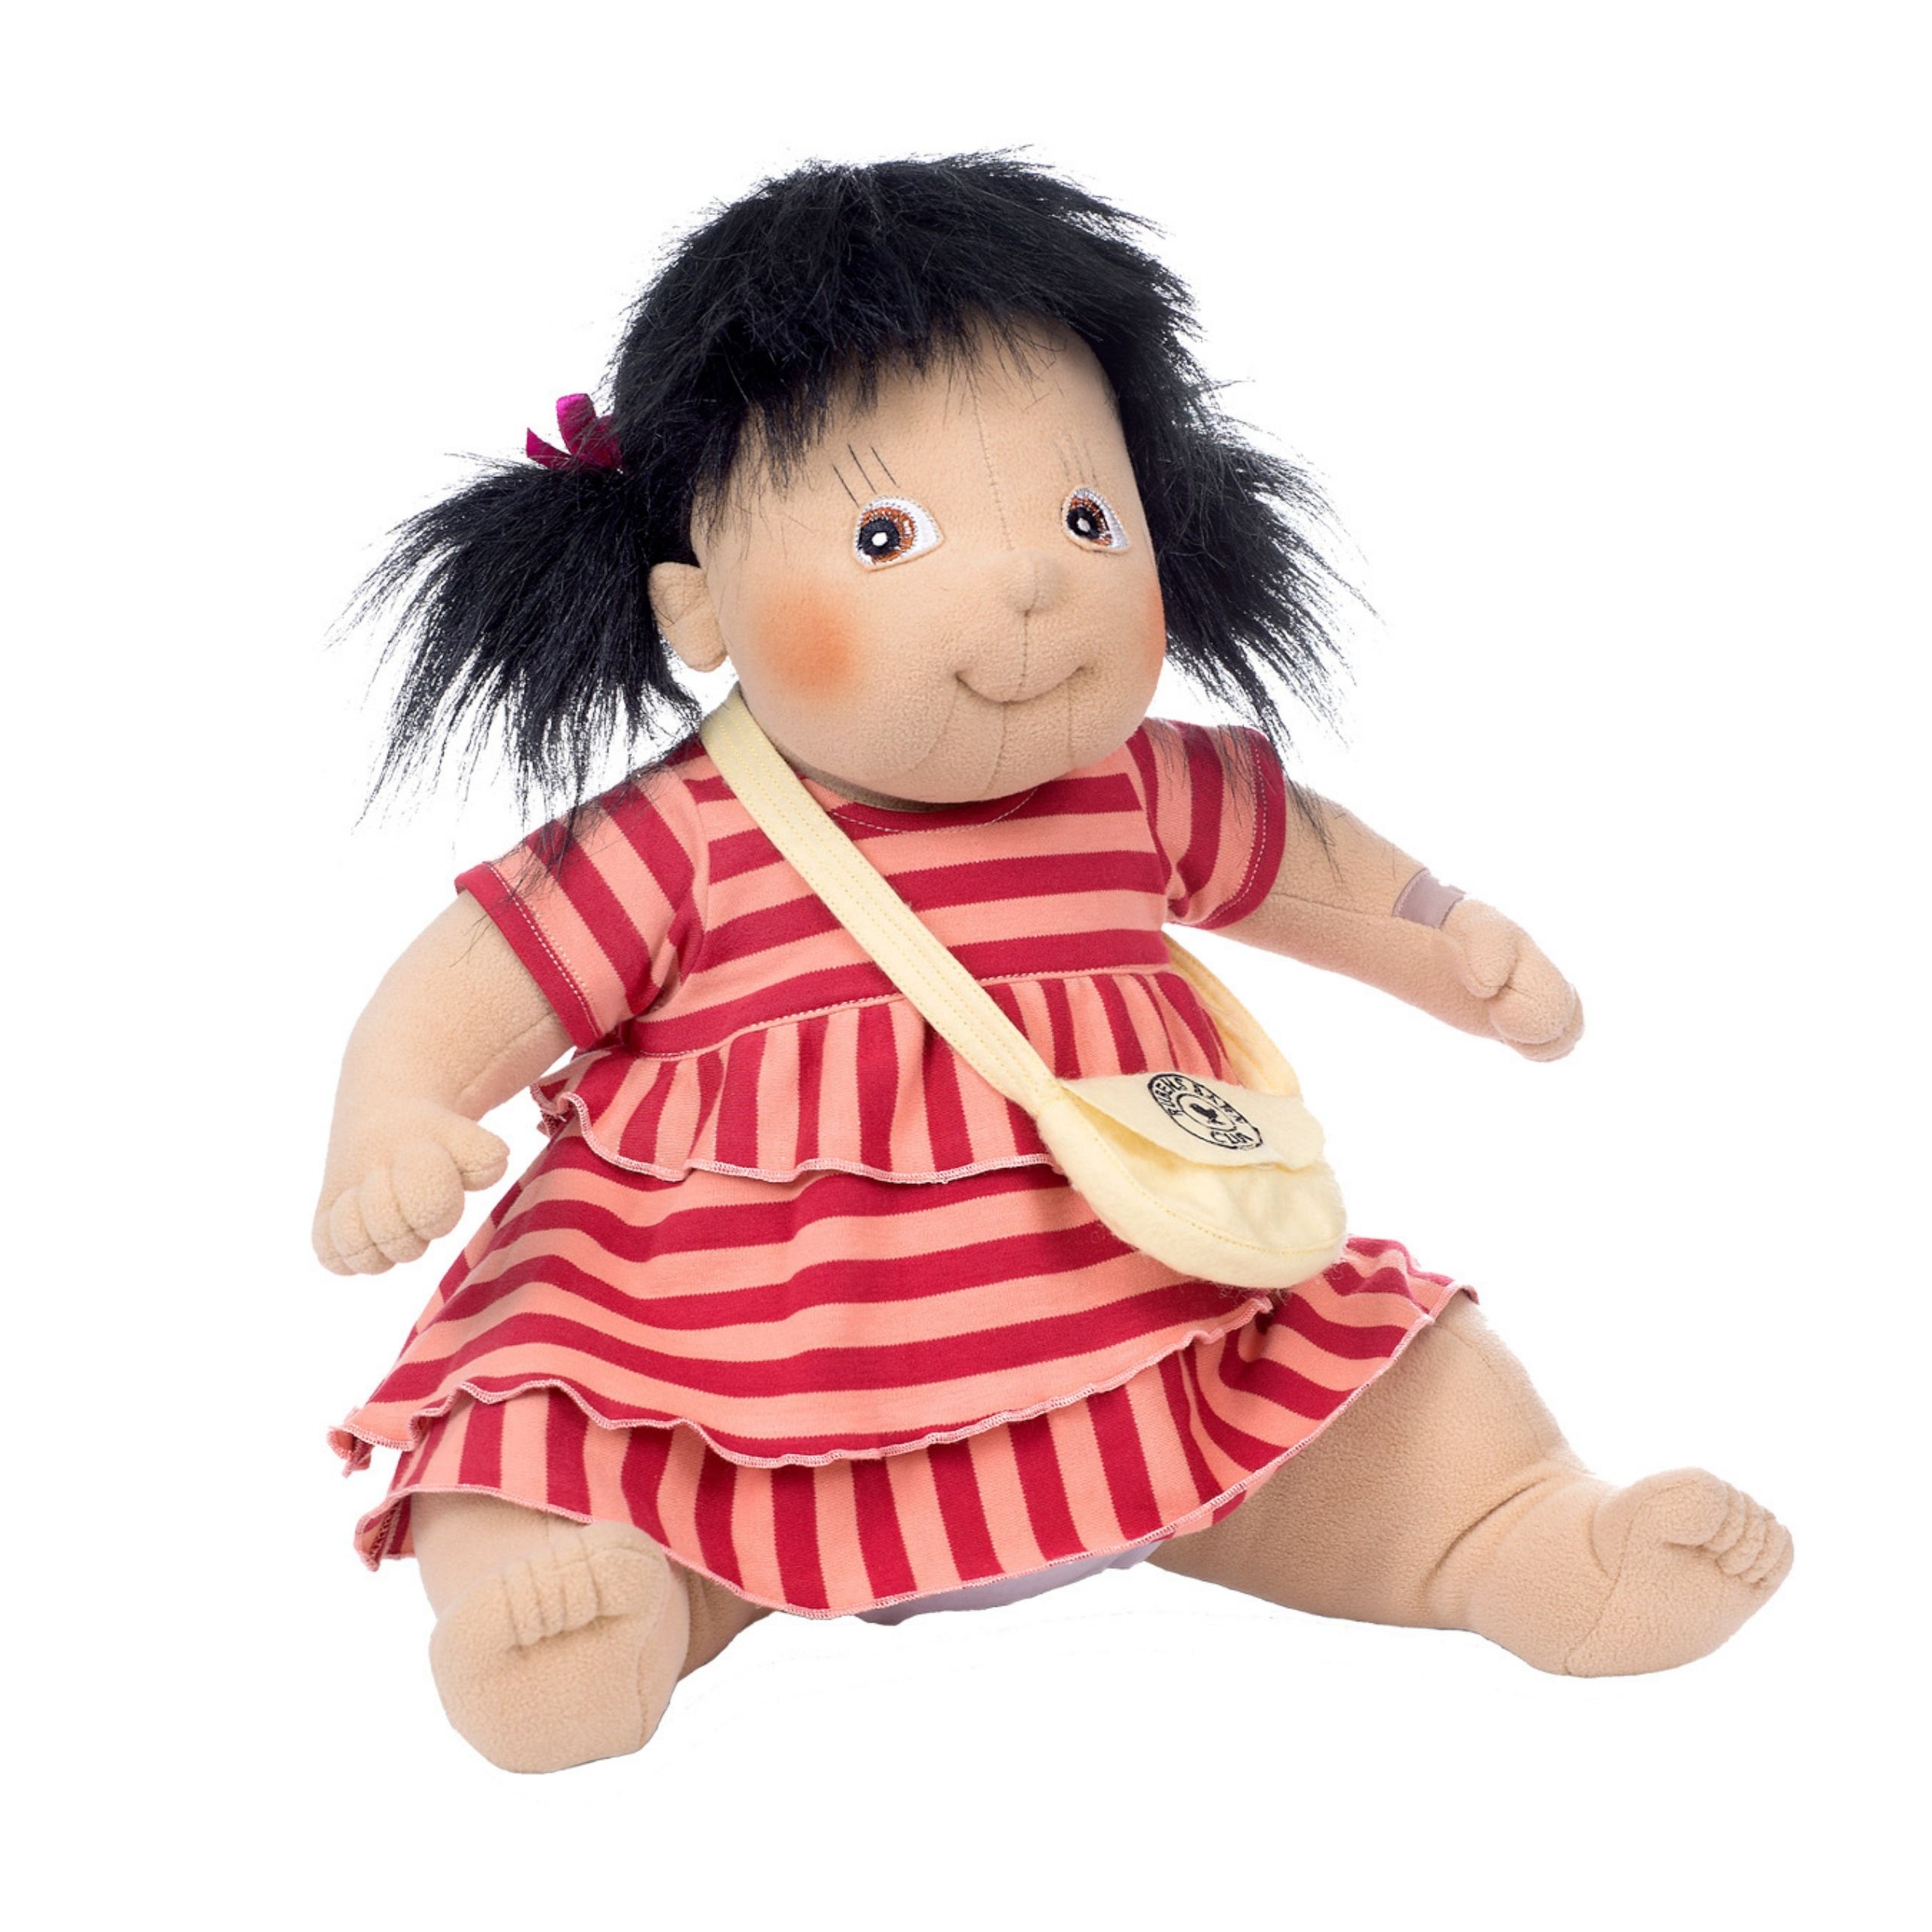 Dolls rubens barn soft doll maria original